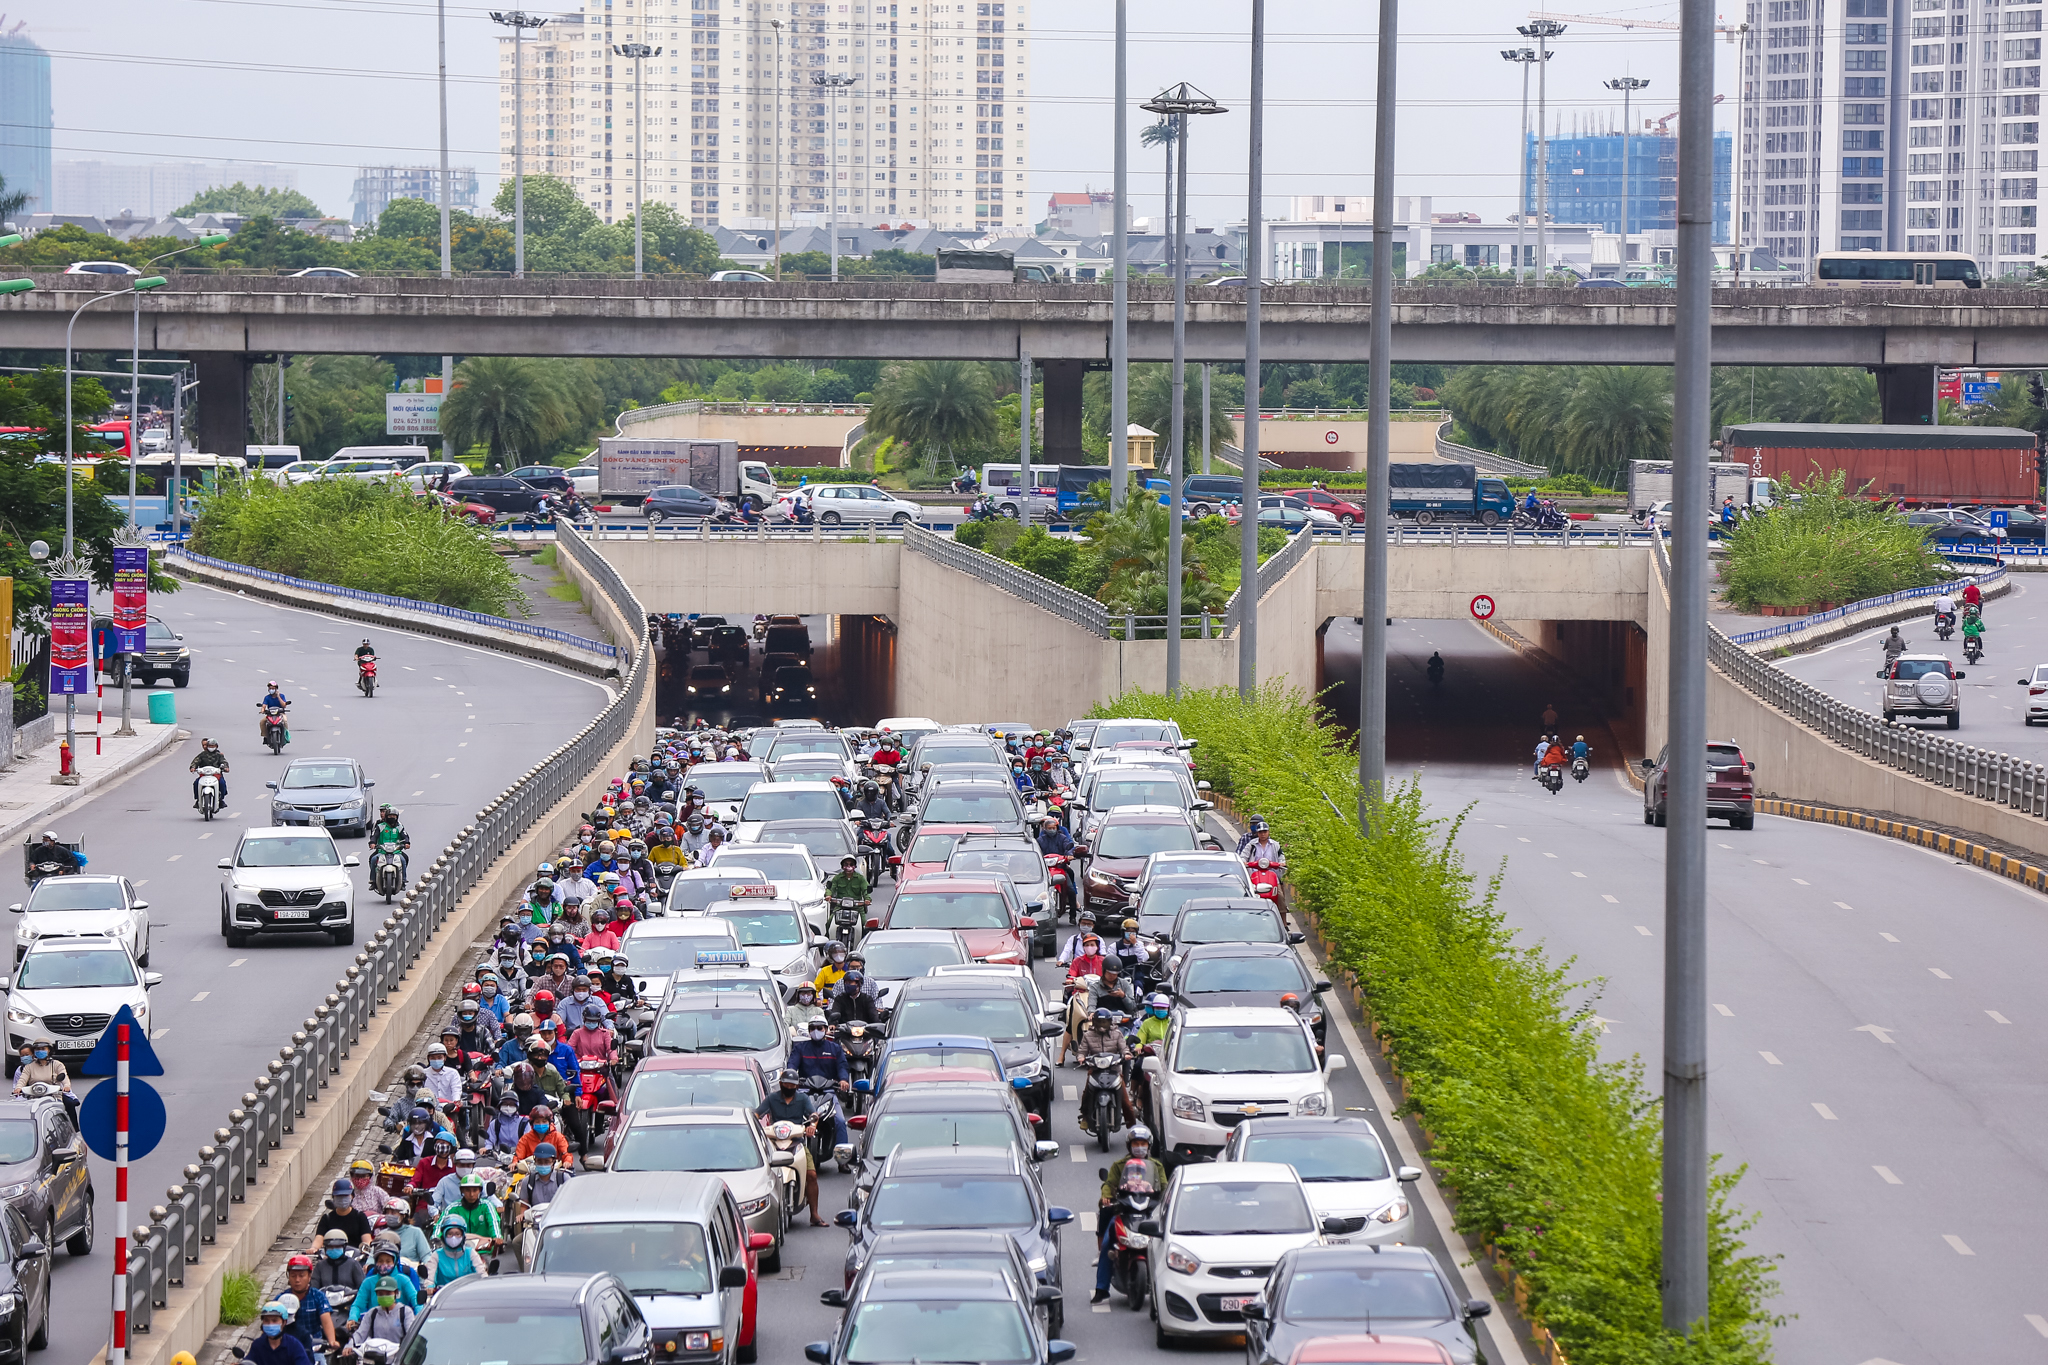 Sau 10 năm, tuyến đường đã có thêm hầm chui nút giao Trung Hoà nằm tại điểm đầu Đại lộ Thăng Long giúp các phương tiện dễ dàng lưu thông. (Ảnh: Minh Sơn/Vietnam+)